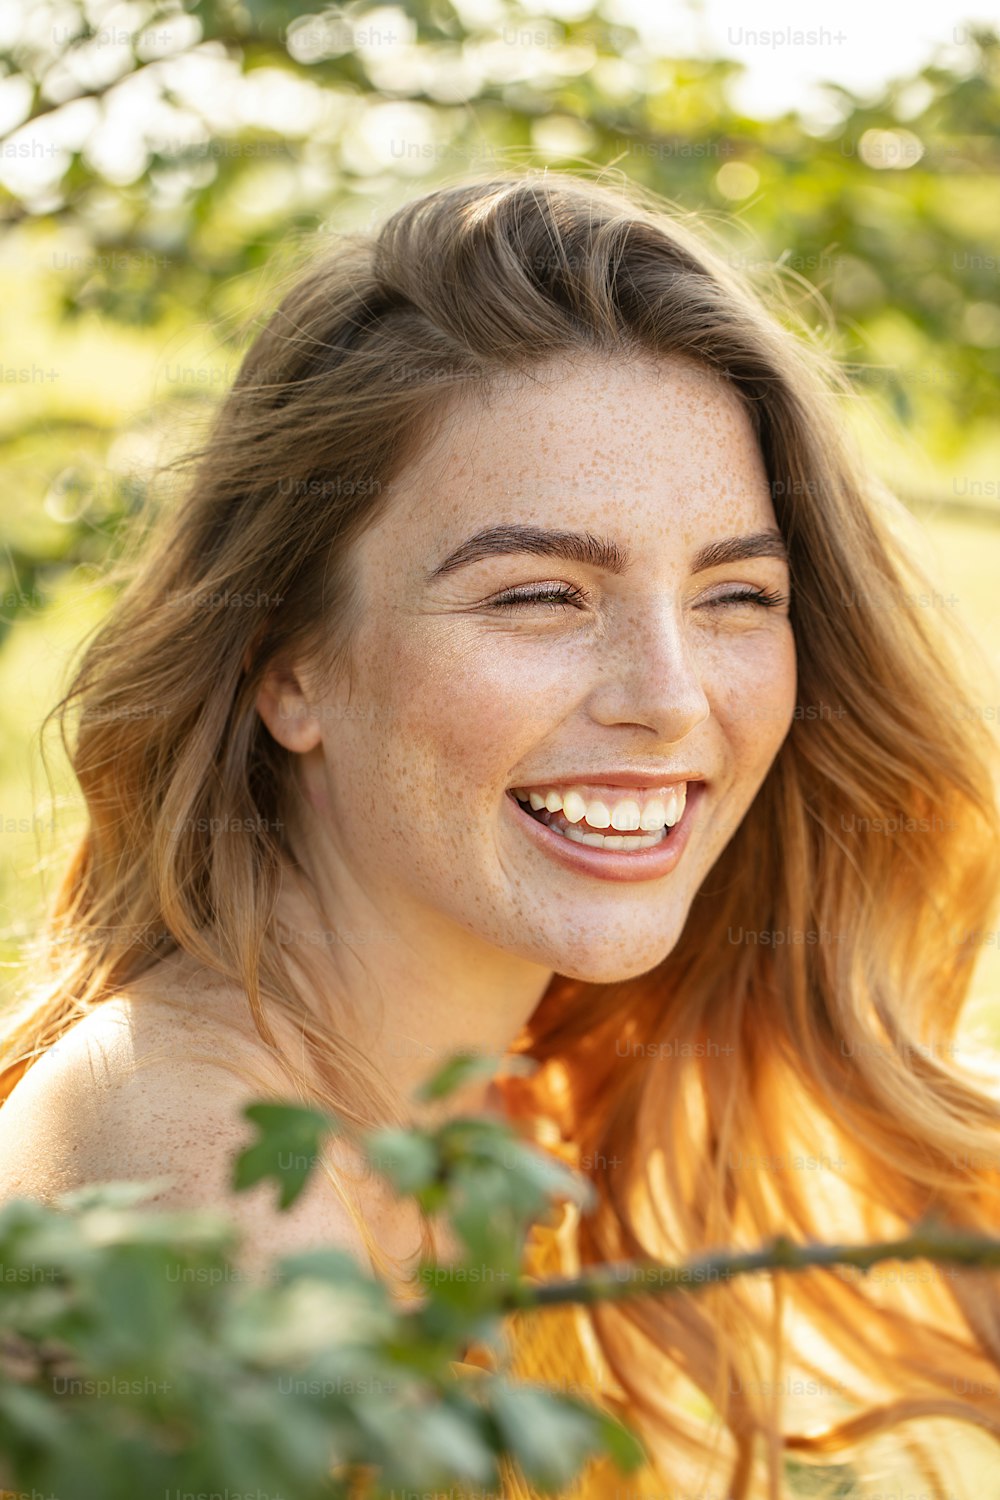 Belle femme heureuse avec des taches de rousseur souriante, posant dans un jardin fleuri par journée ensoleillée.